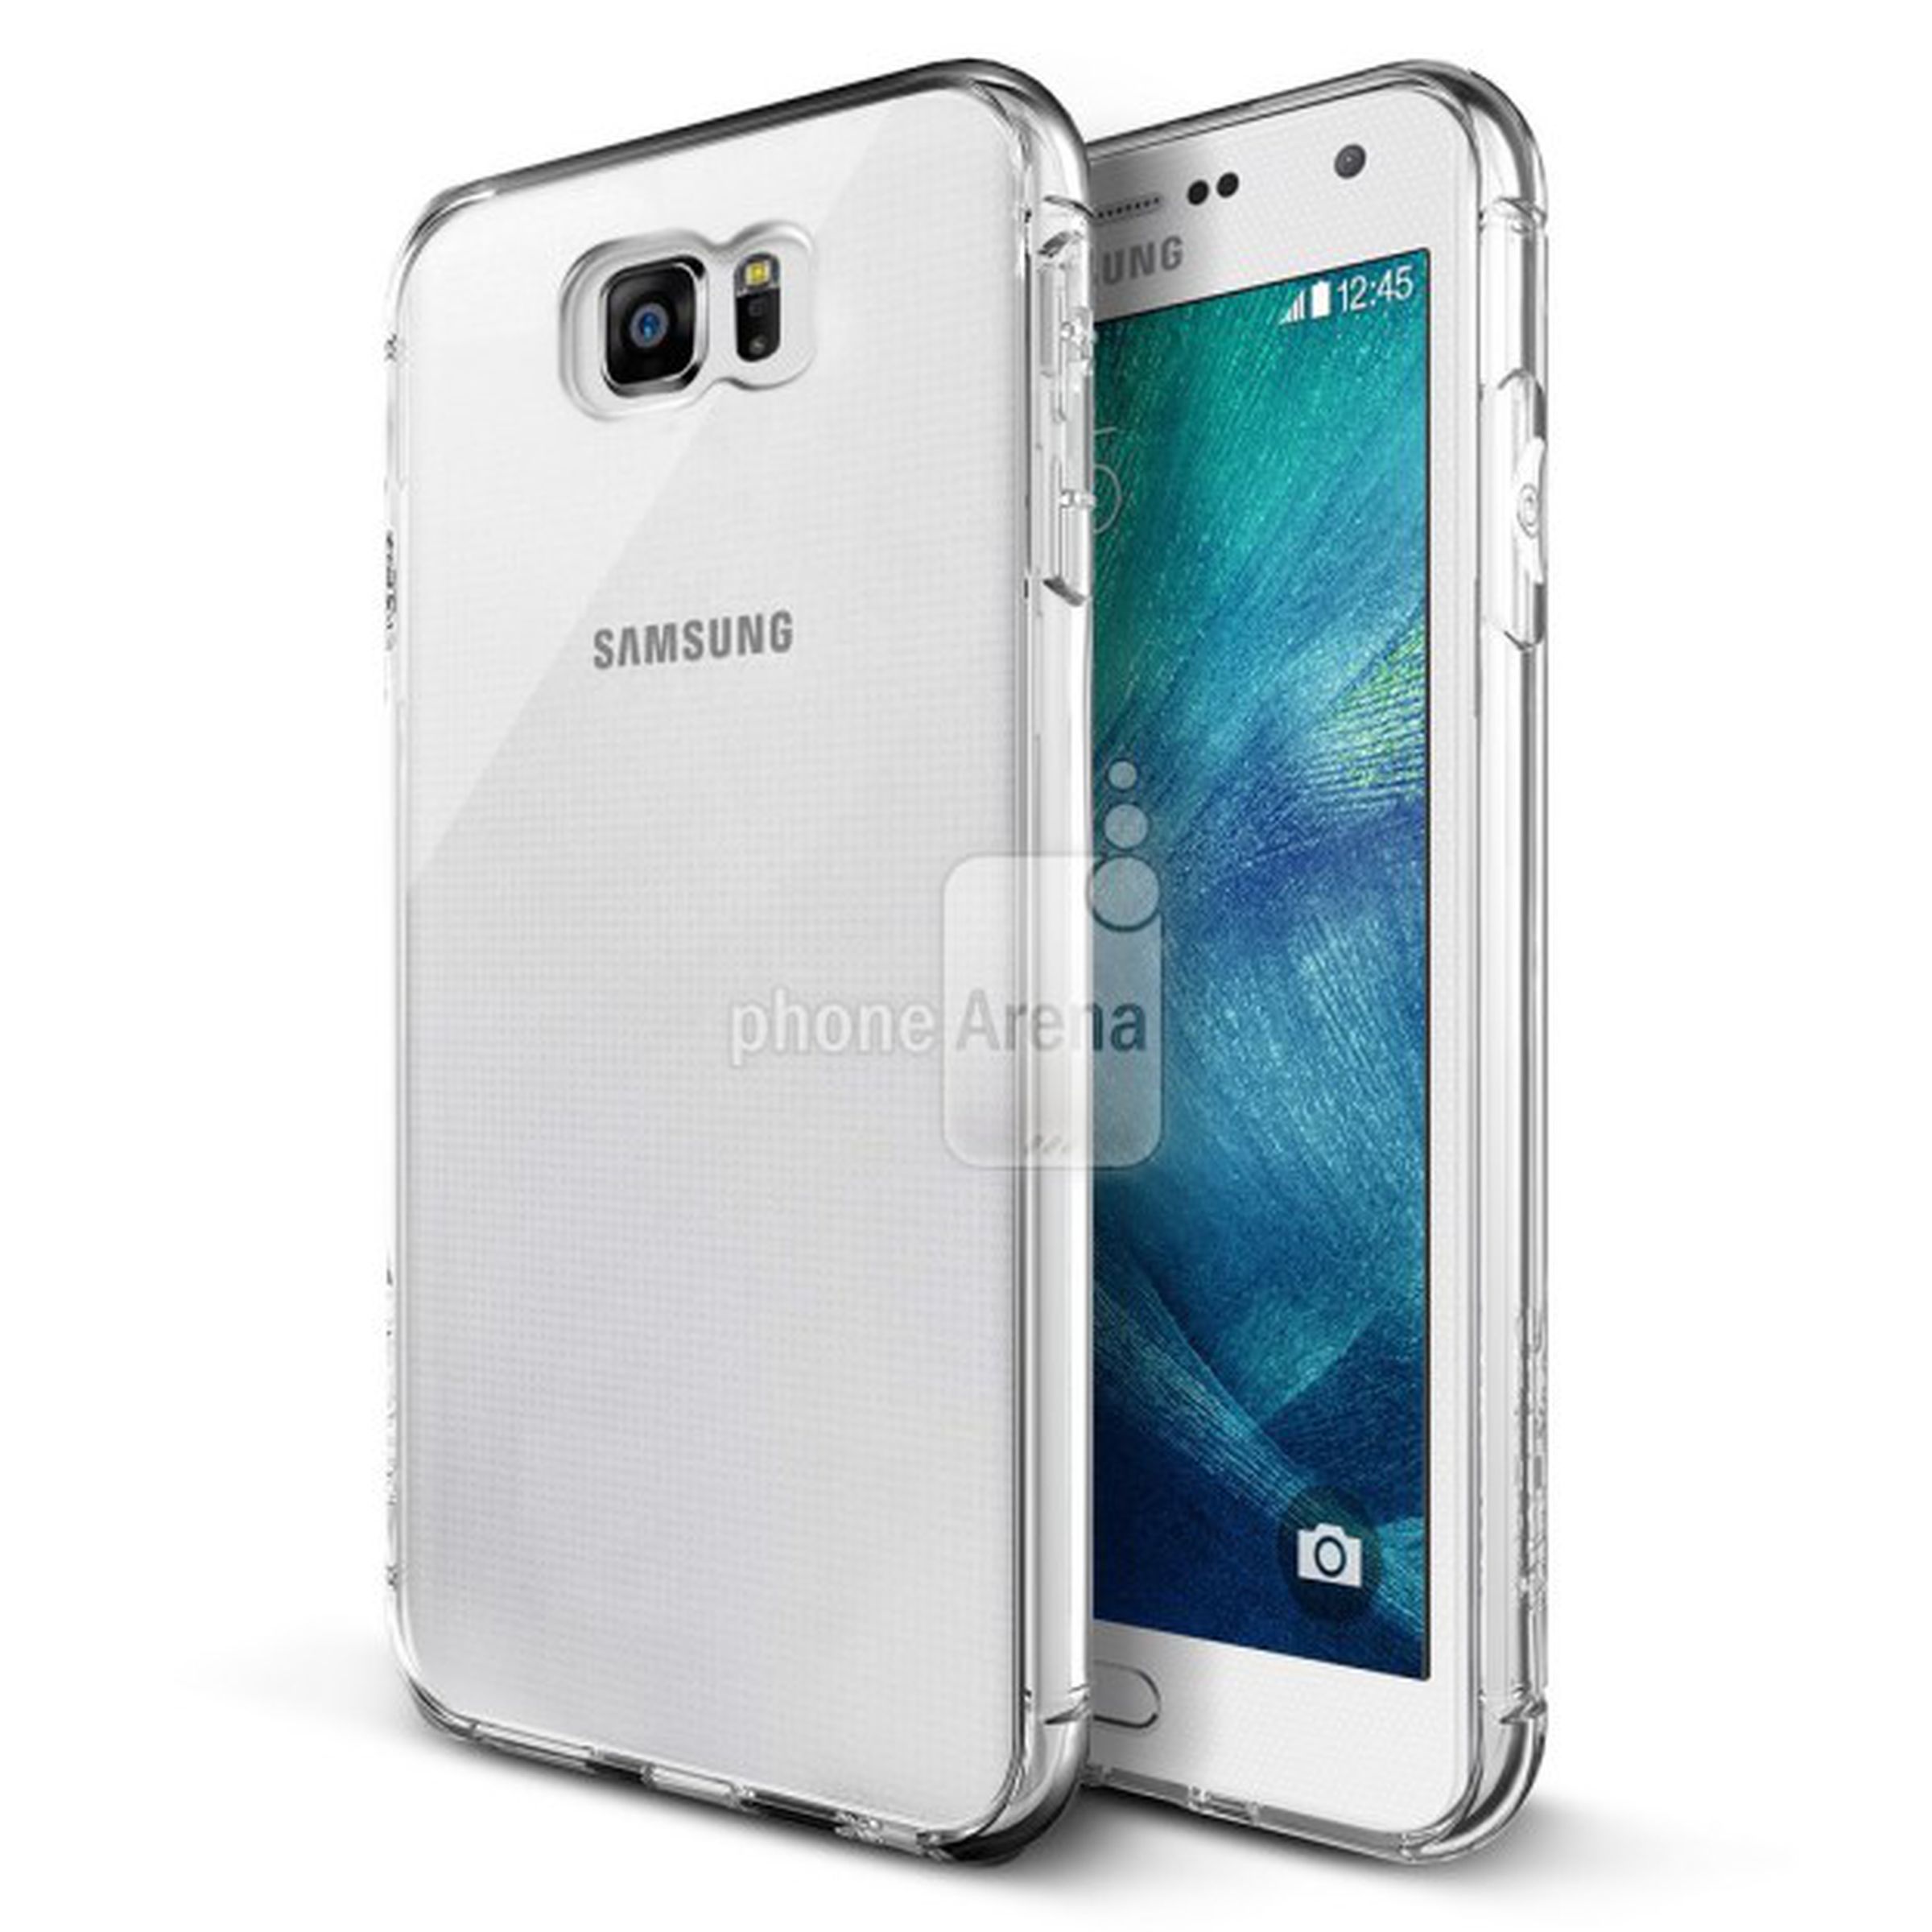 Samsung Galaxy S6 case